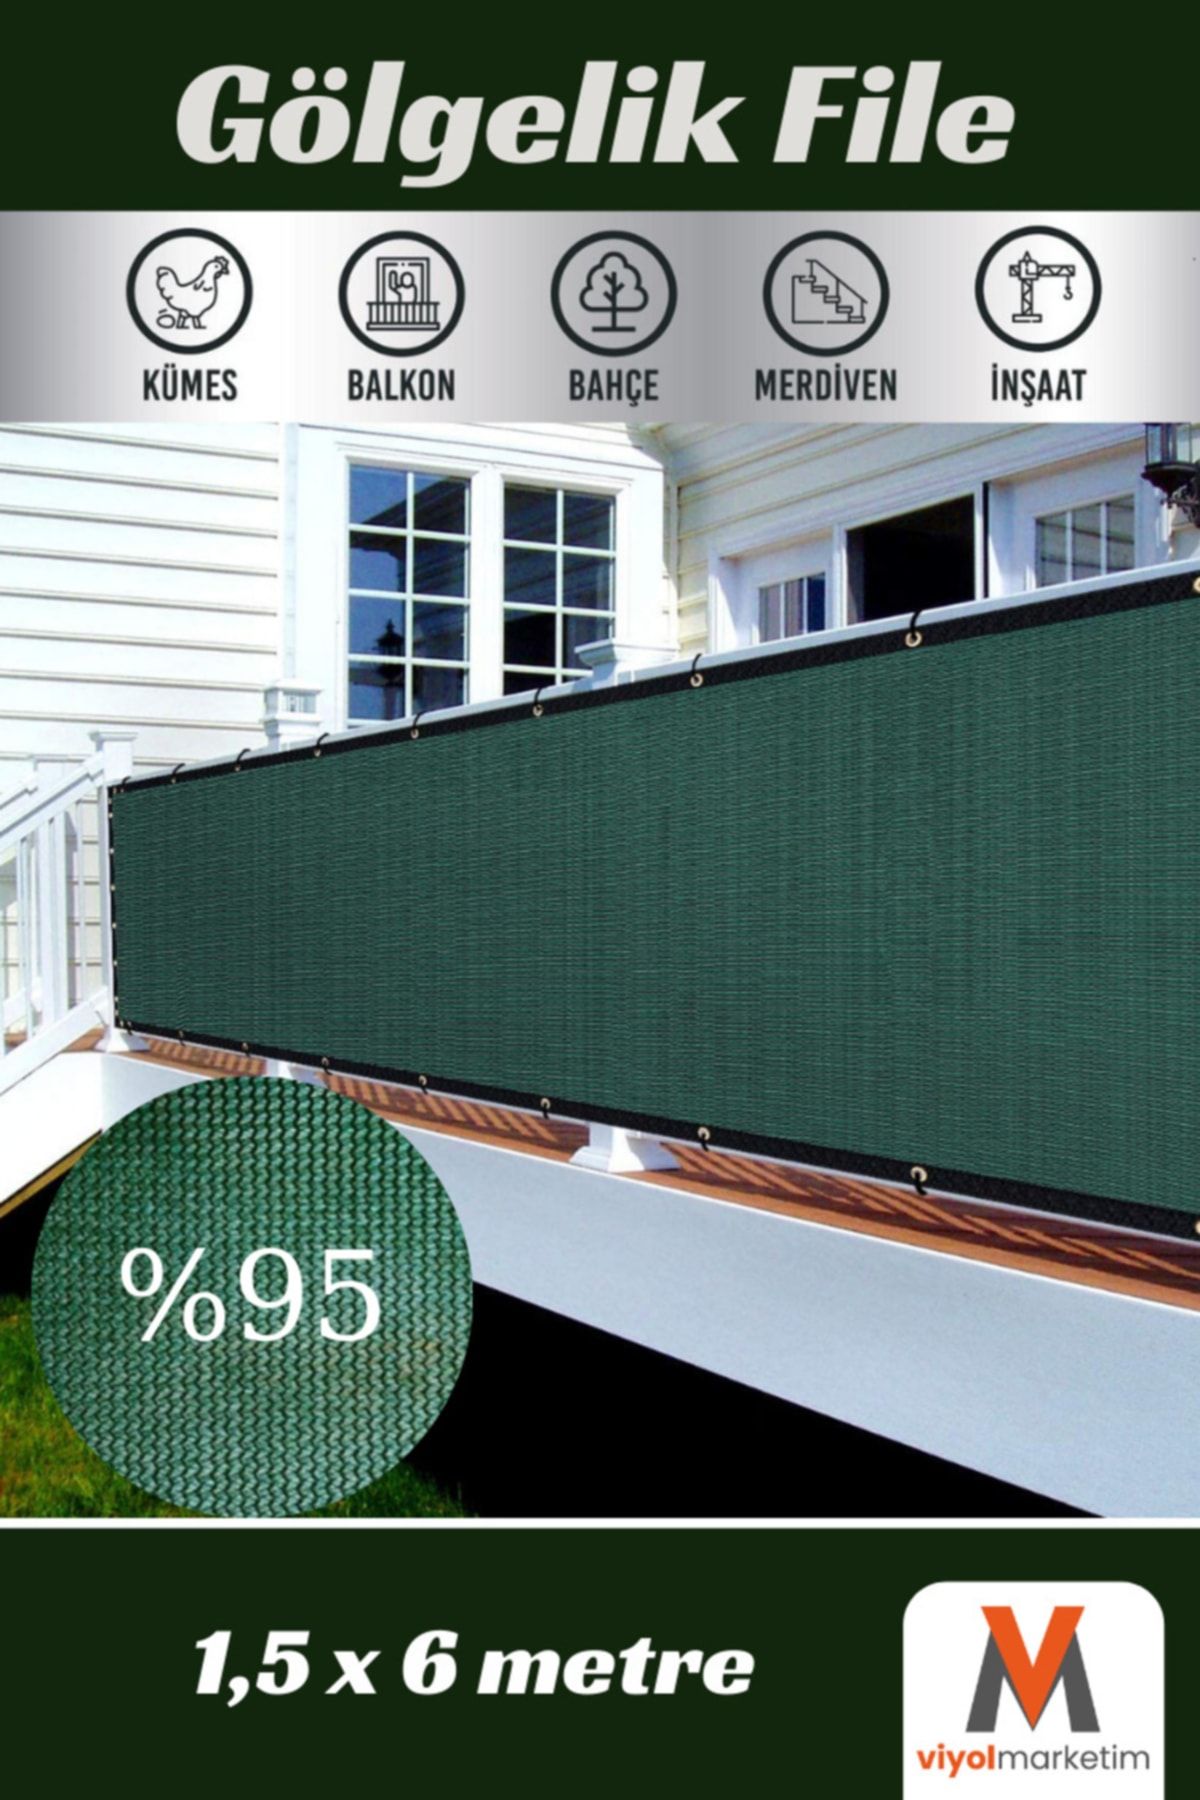 viyolmarketim 95'lik Yeşil Gölgelik File 1,5x6 Metre Çit Gizleme Ağı Şeritli Kuşgözlü Balkon Filesi